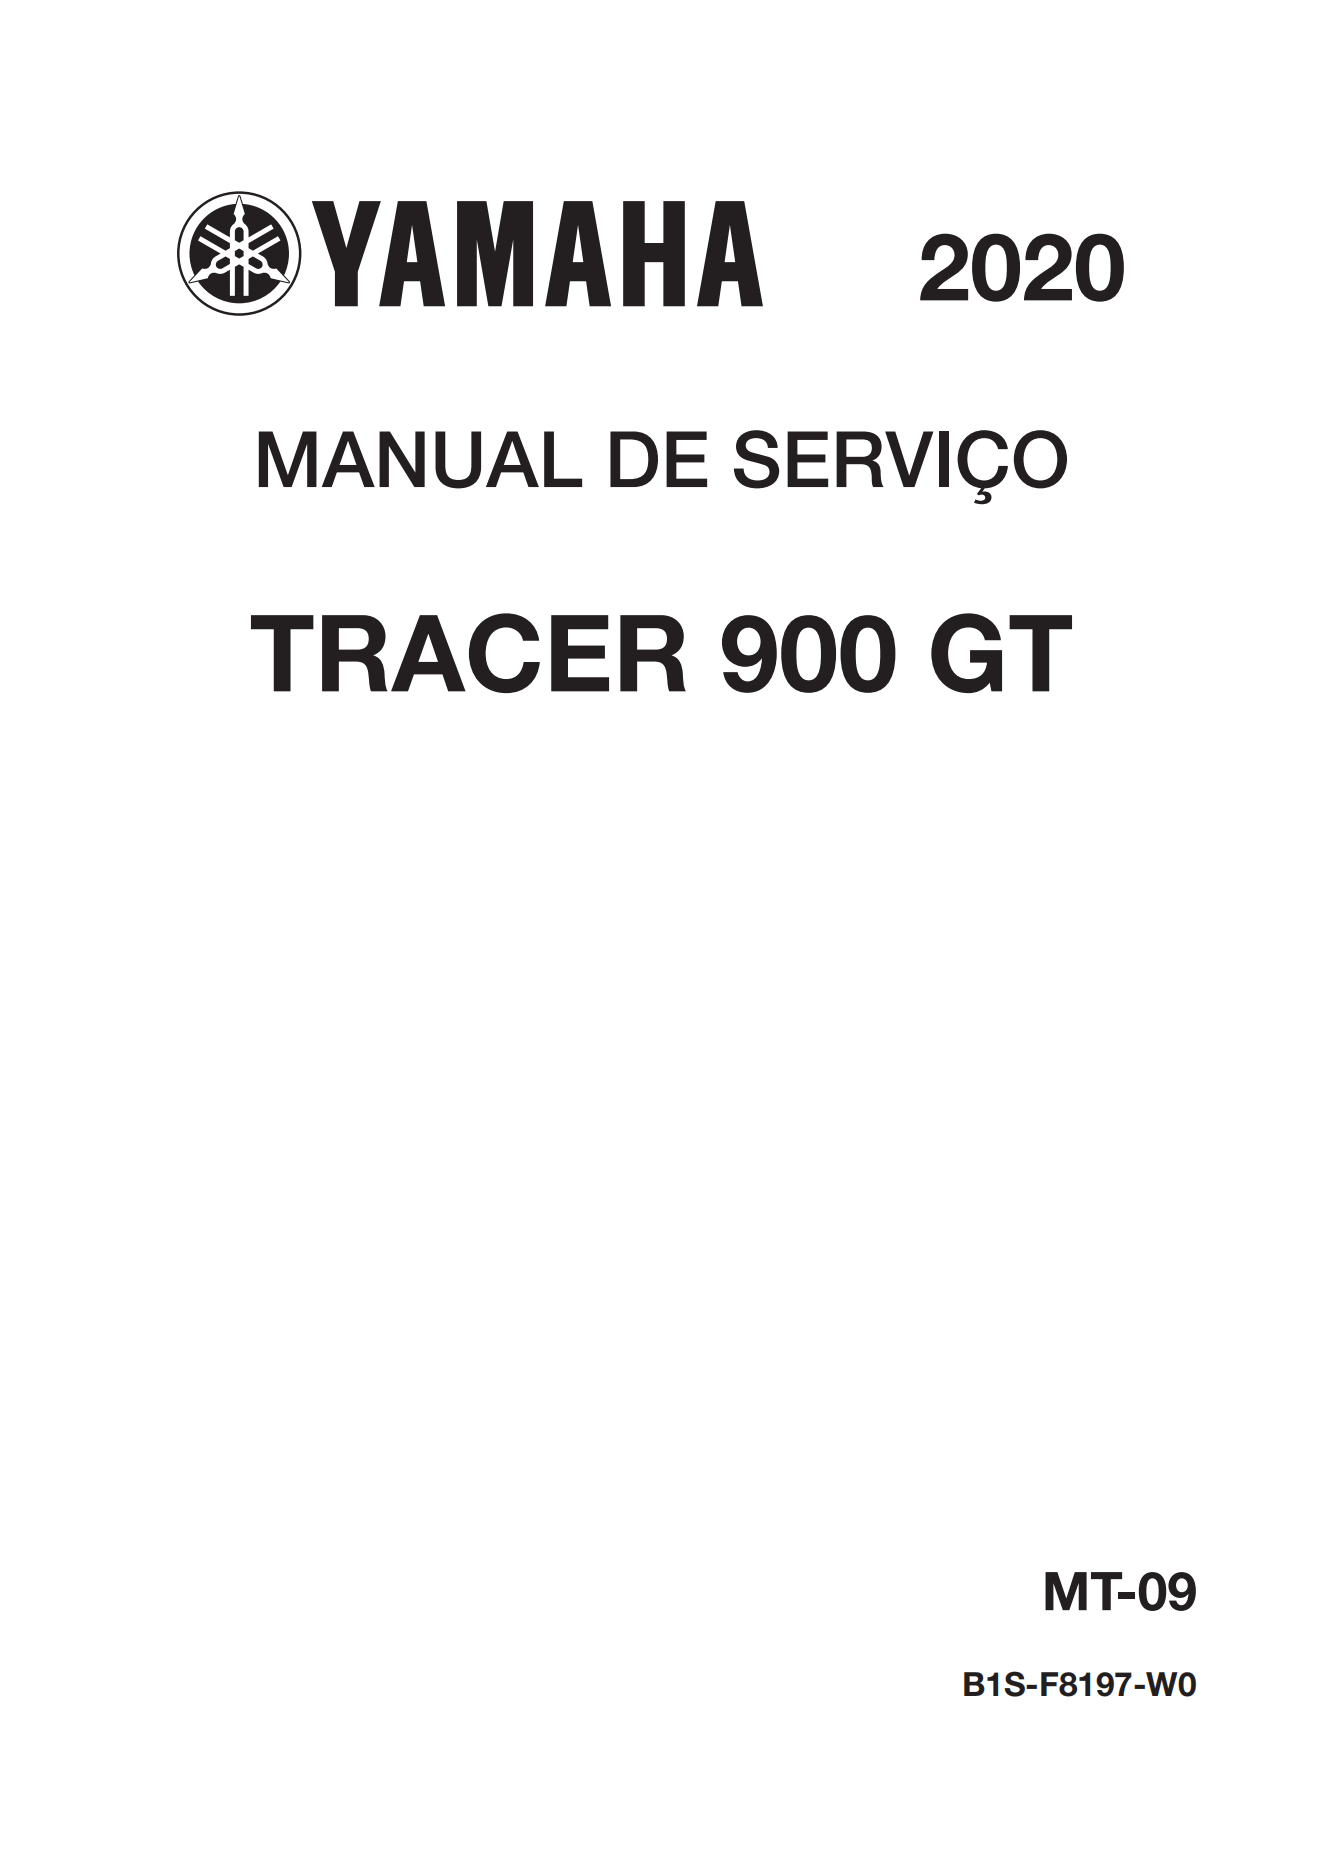 原版葡萄牙语2019-2020年雅马哈tracer900GT维修手册插图